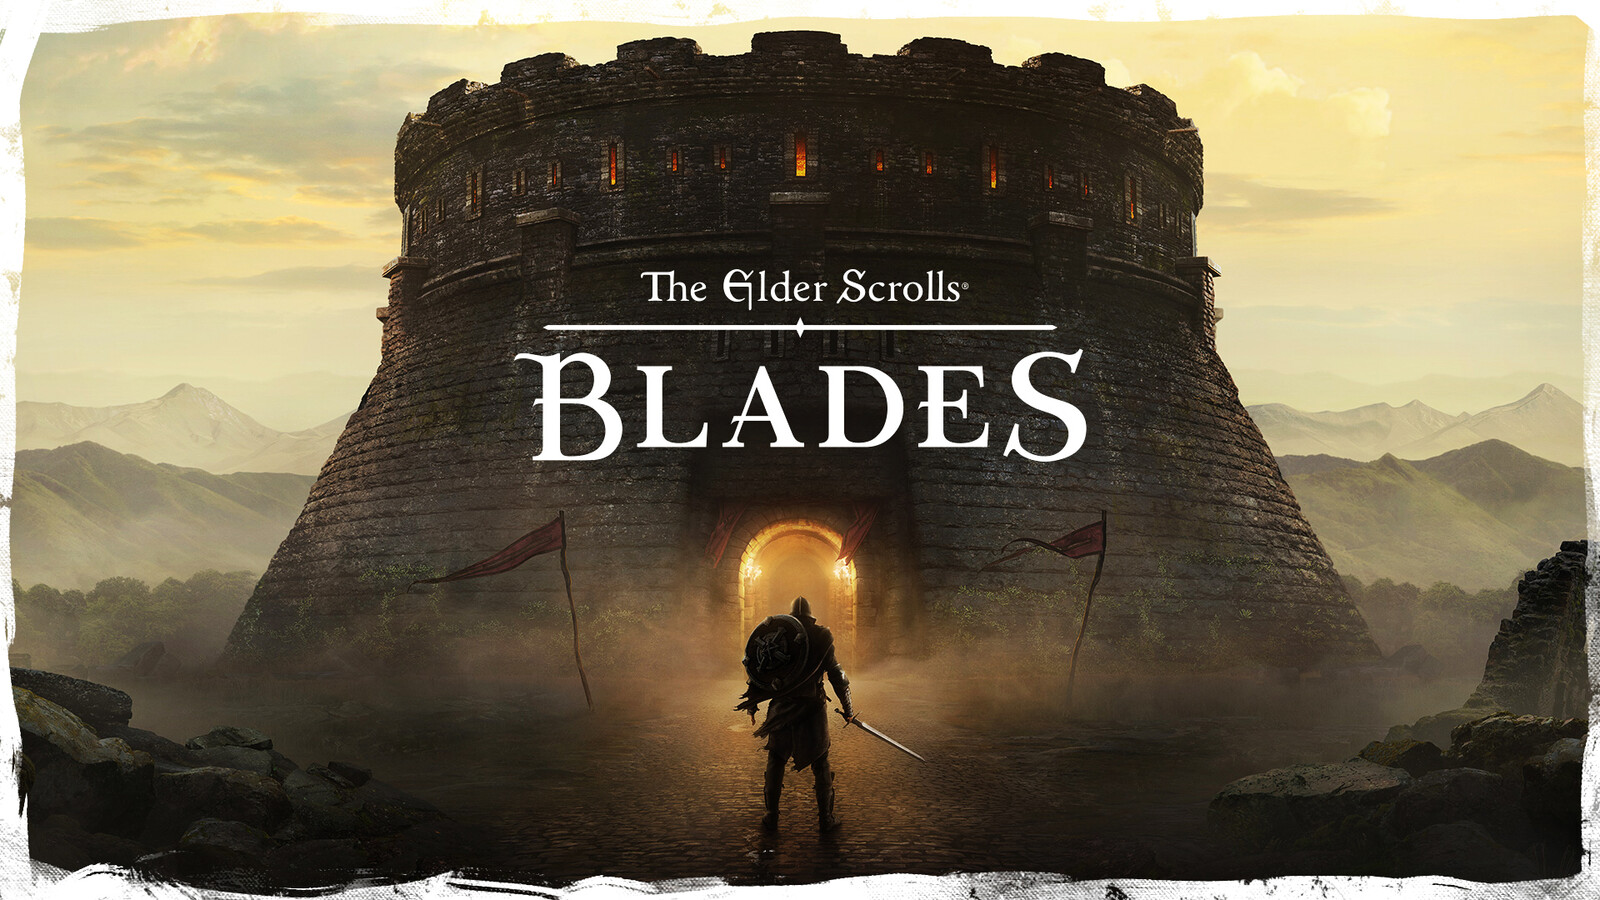 The Elder Scrolles Blades (Bethesda Mobile Game)